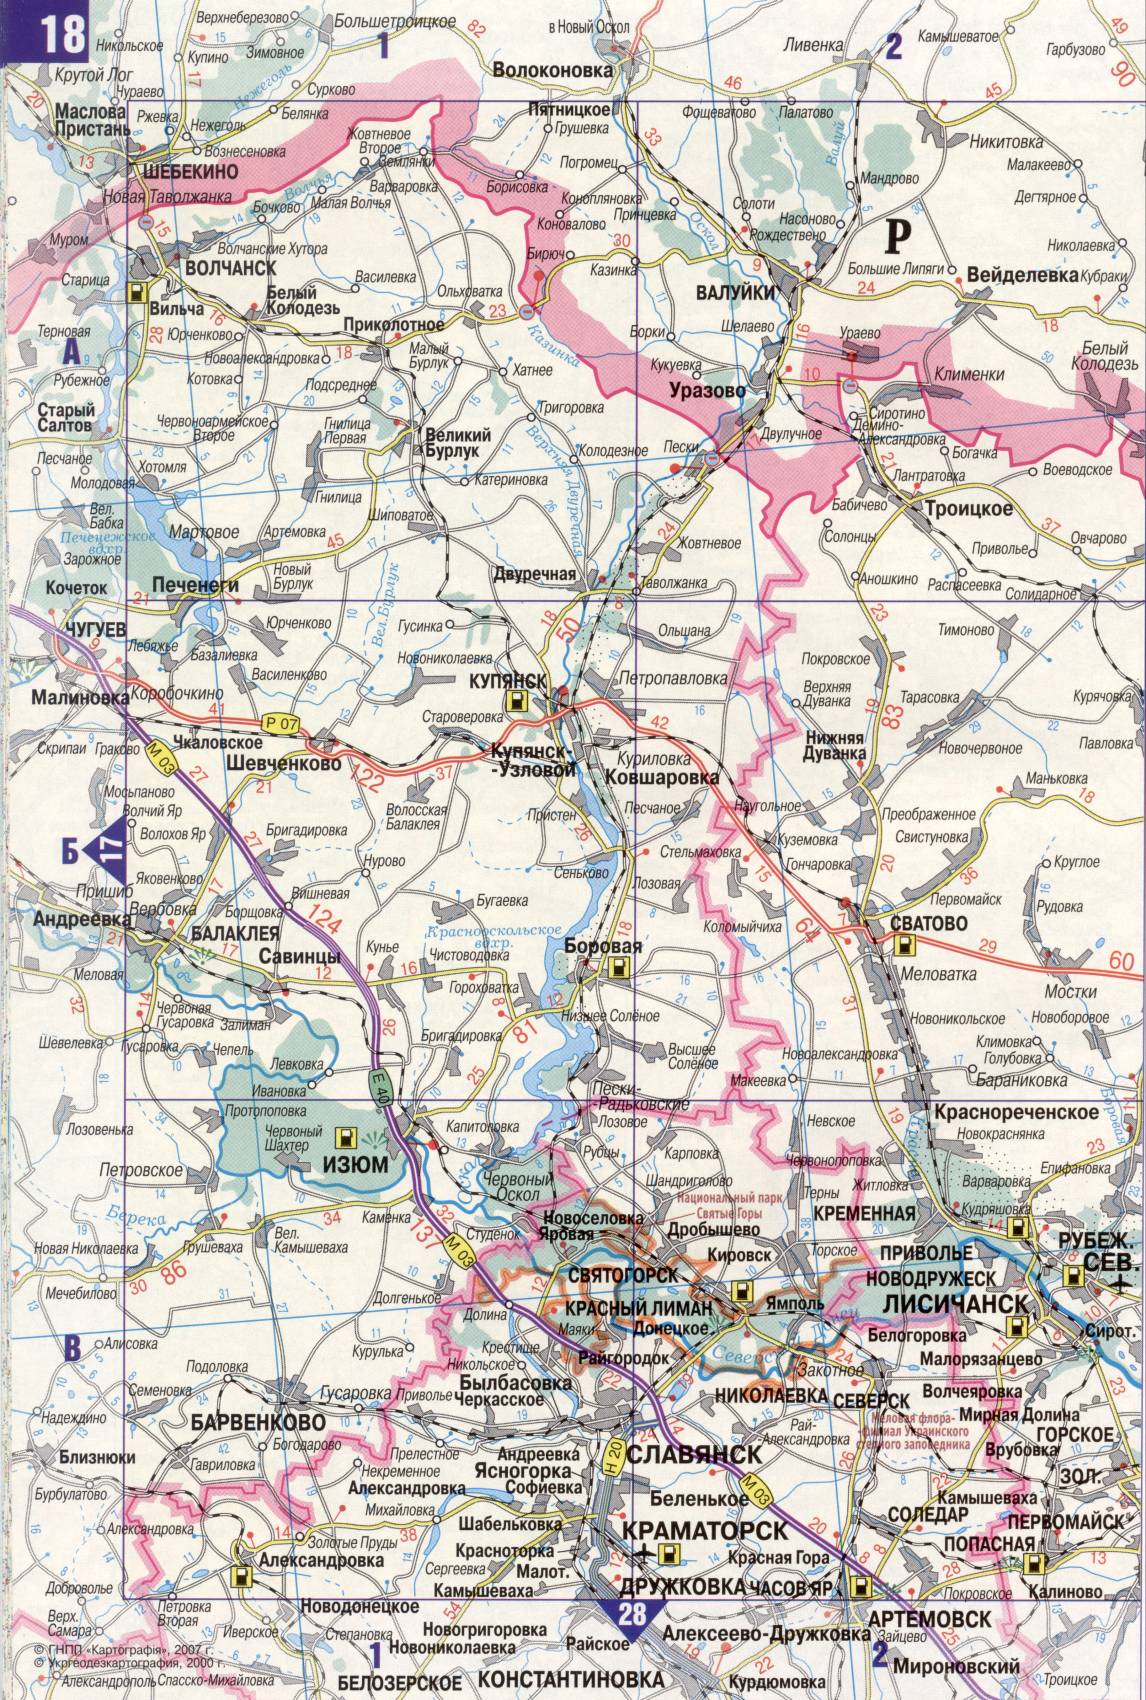 Карта Украины. Подробная карта дорог Украина из автомобильног атласа. скачать бесплатно, I1